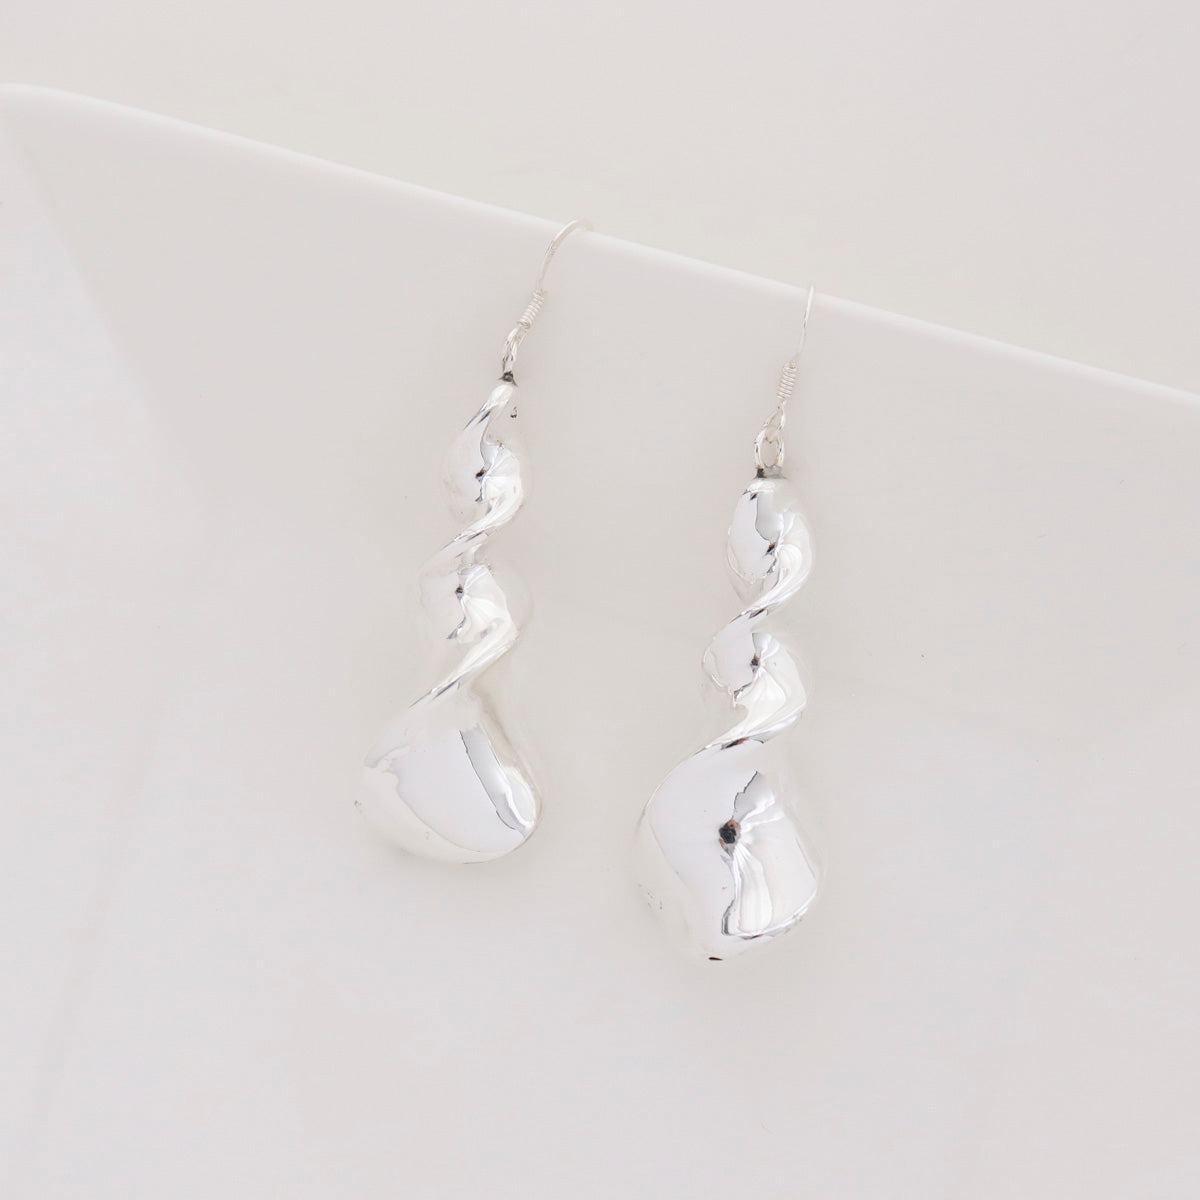 925 sterling silver Long Twisted  bar hook drop Earrings Long chandelier earrings